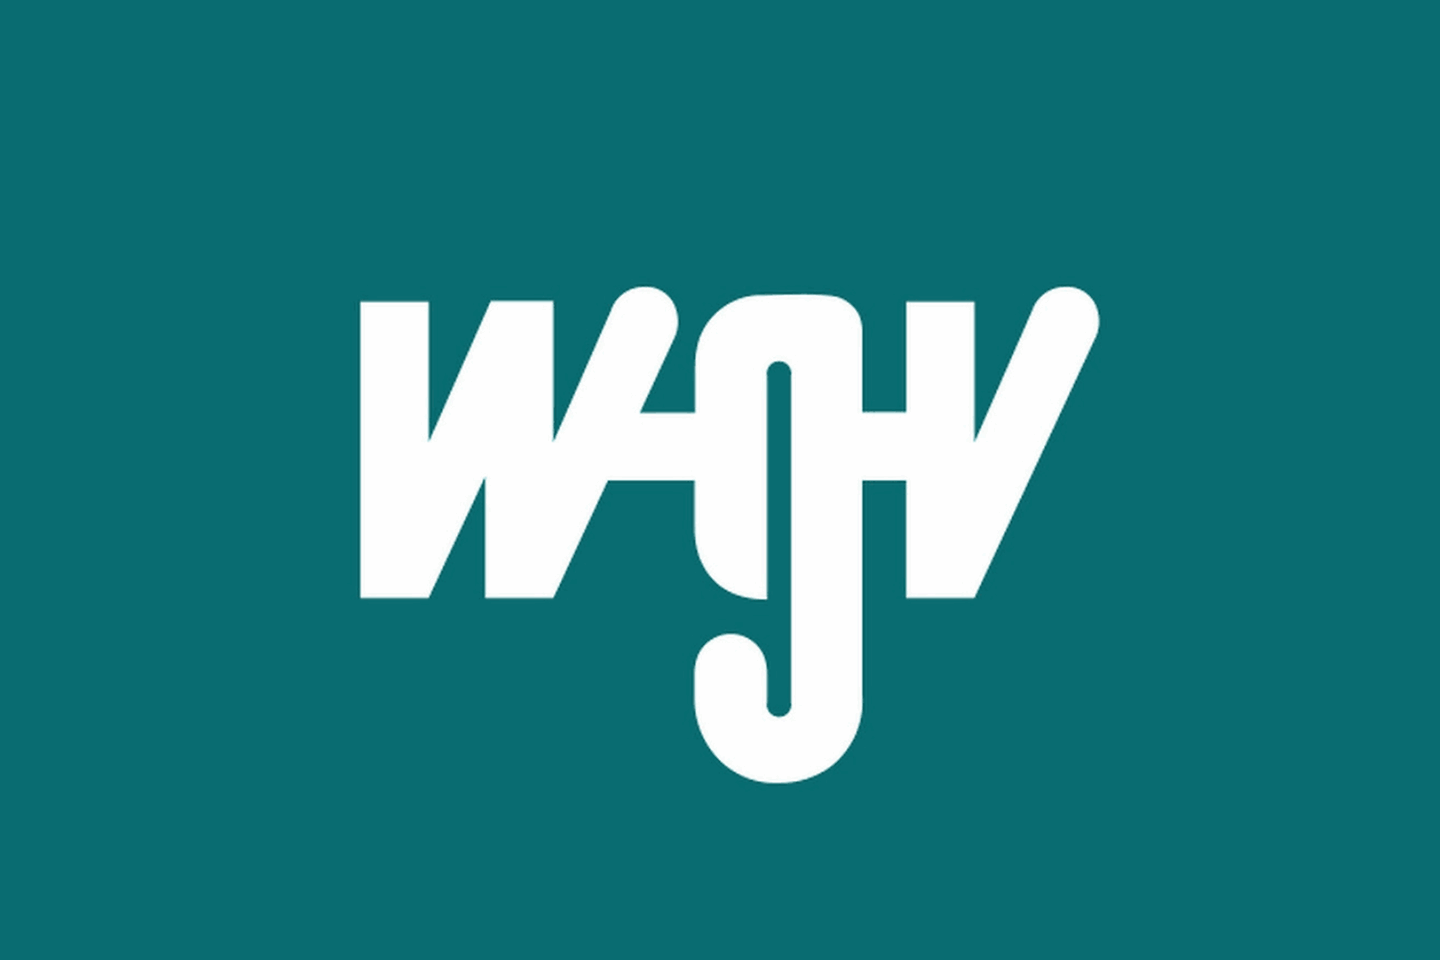 Logo WGV